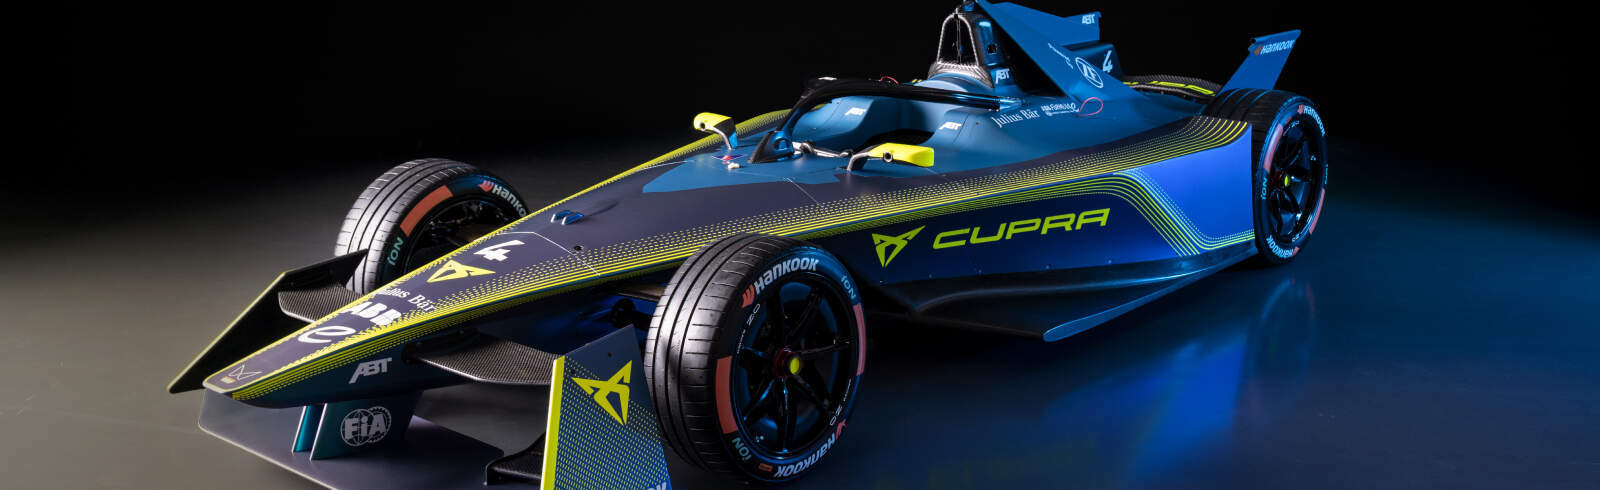 Lucas di Grassi dołącza do ABT CUPRA w nowym sezonie wyścigowym Formuły E